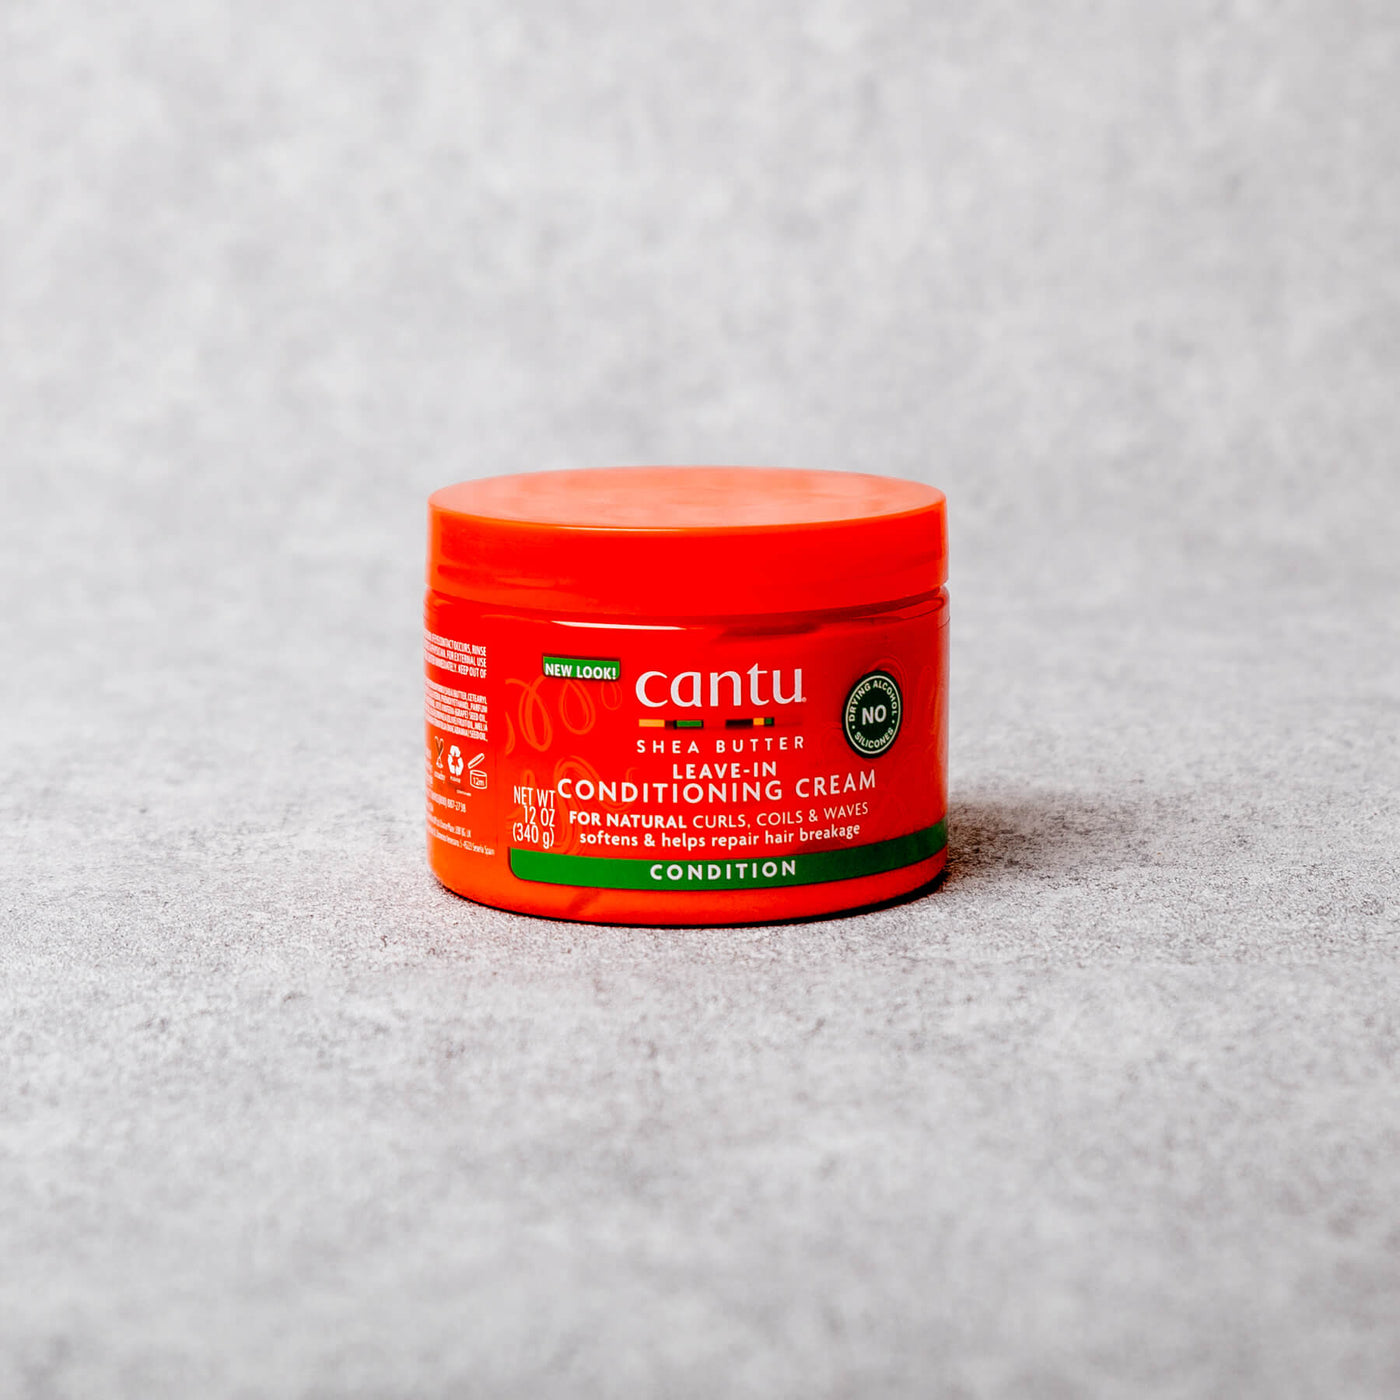 Cantu - Leave-IN Conditioning Cream